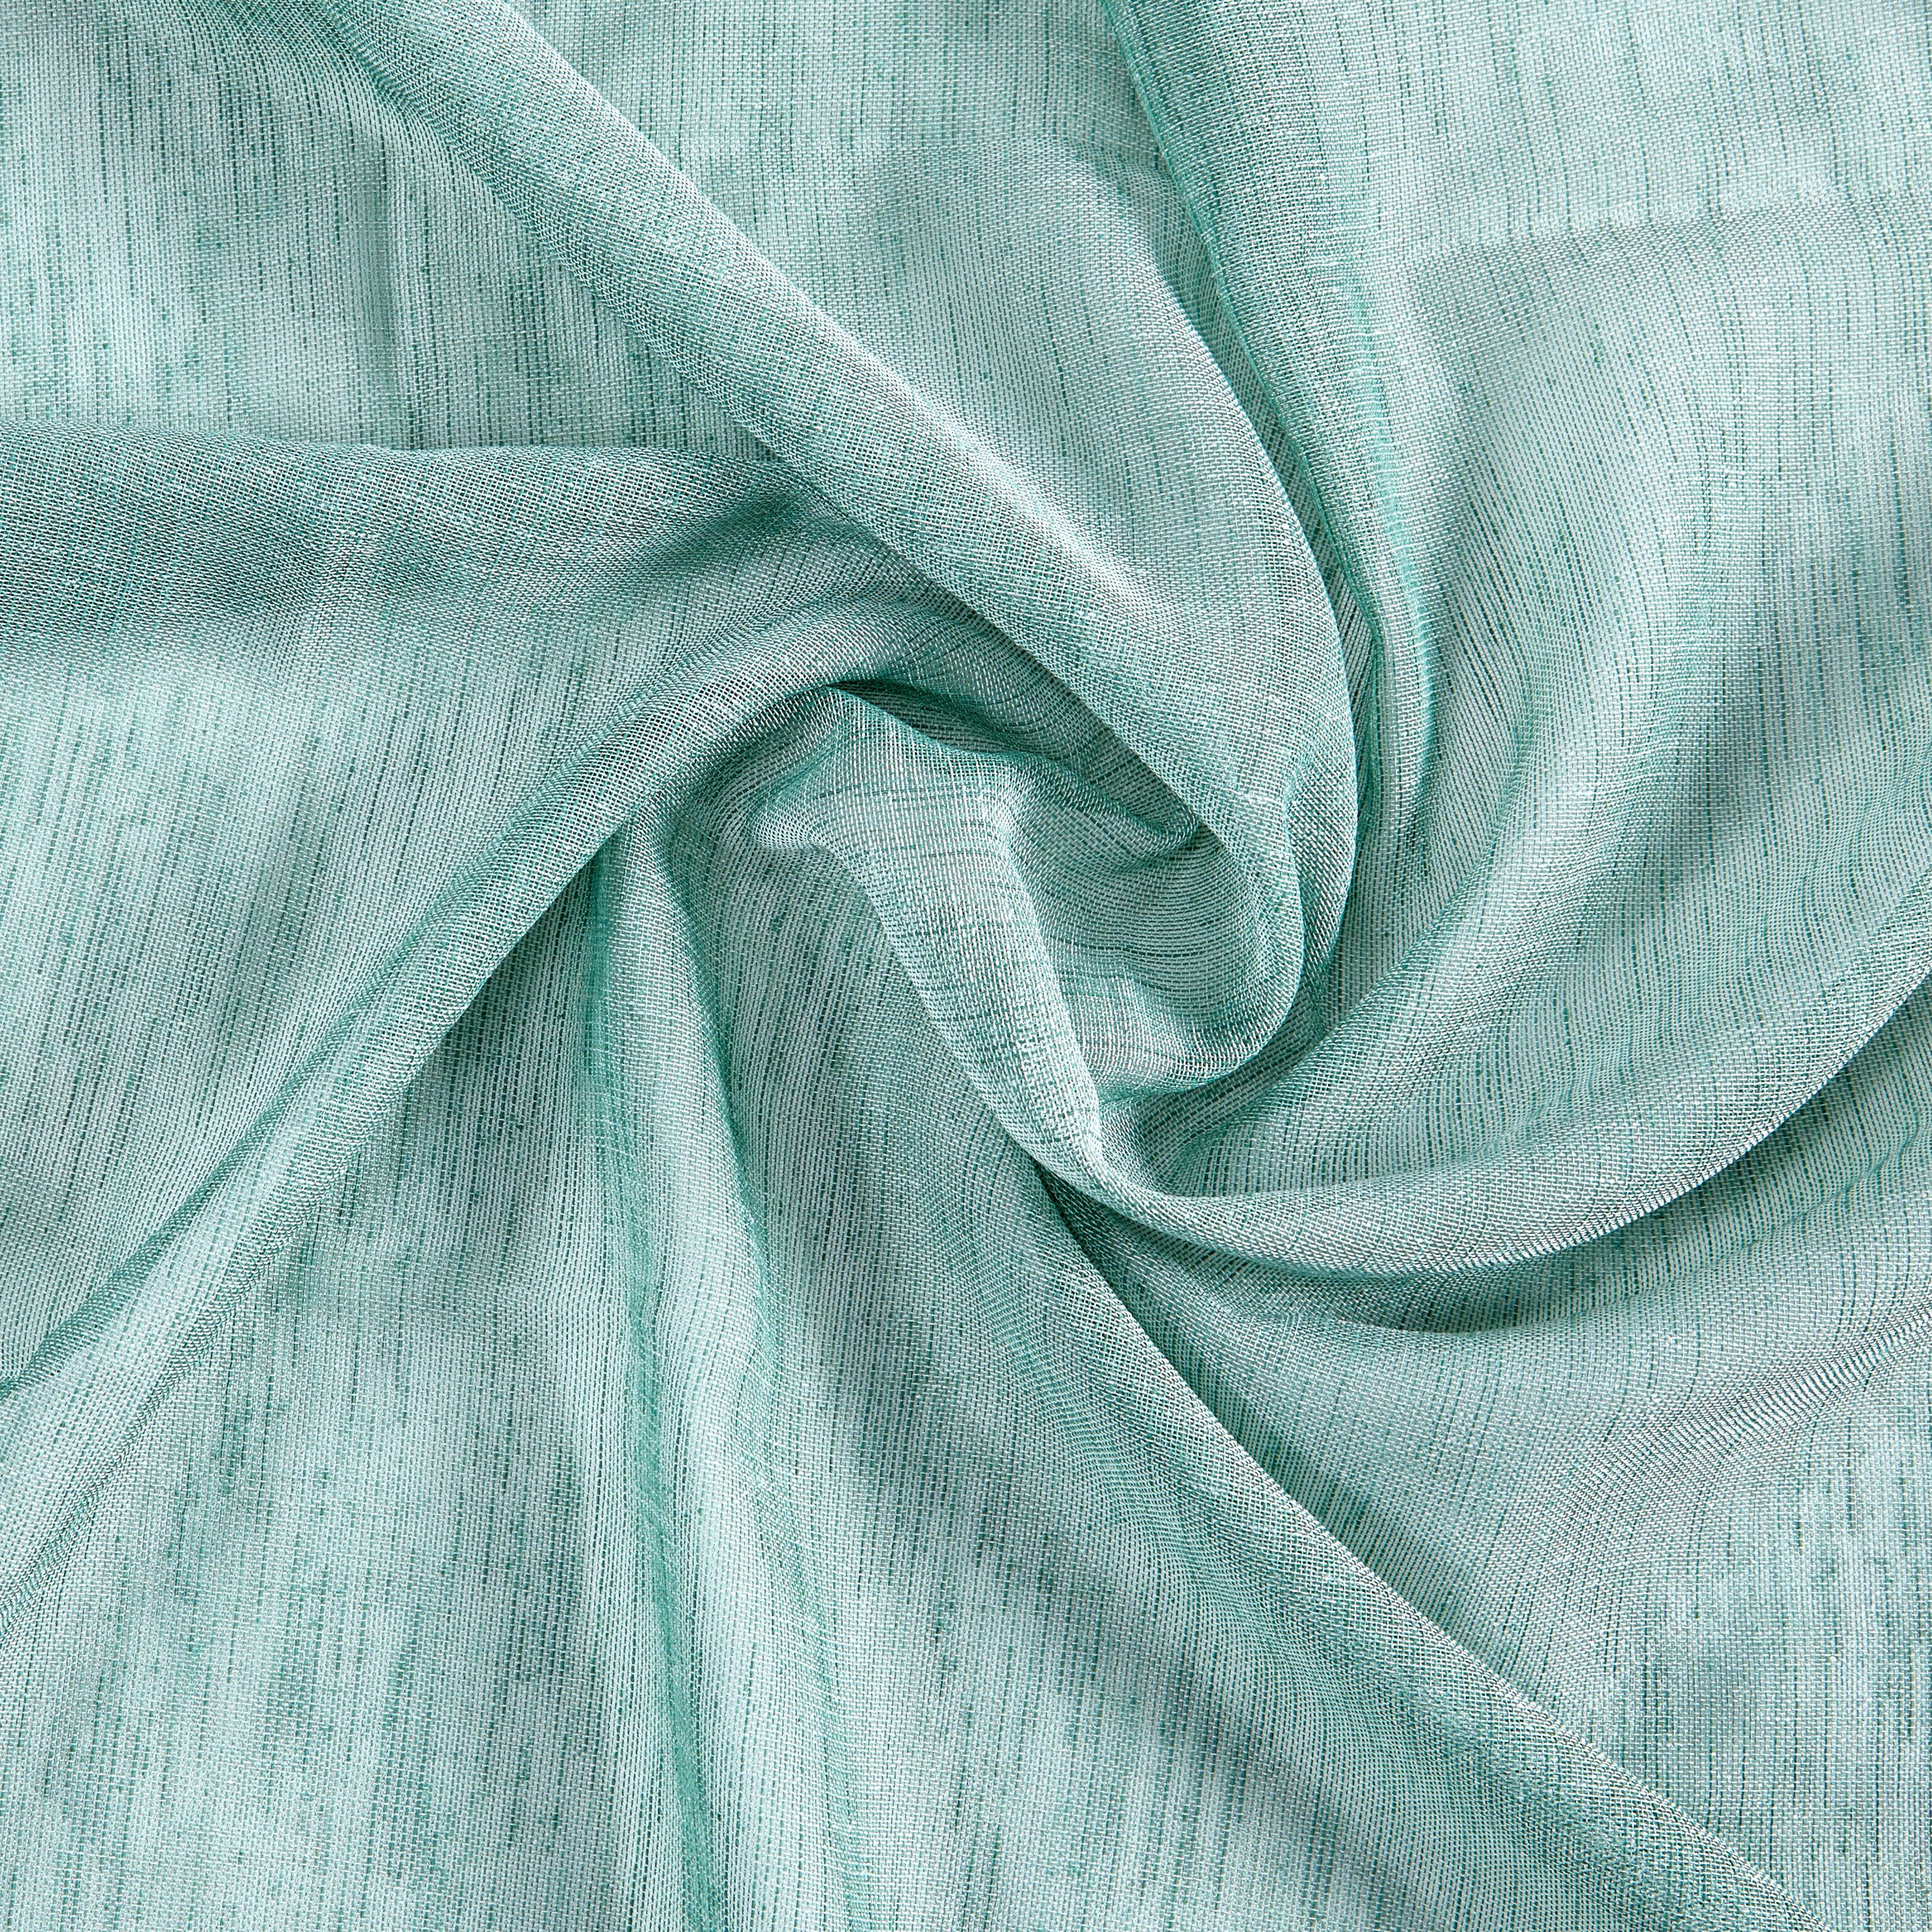 Záves Sigrid, 140/245cm - zelená, Romantický / Vidiecky, textil (140/245cm) - Premium Living